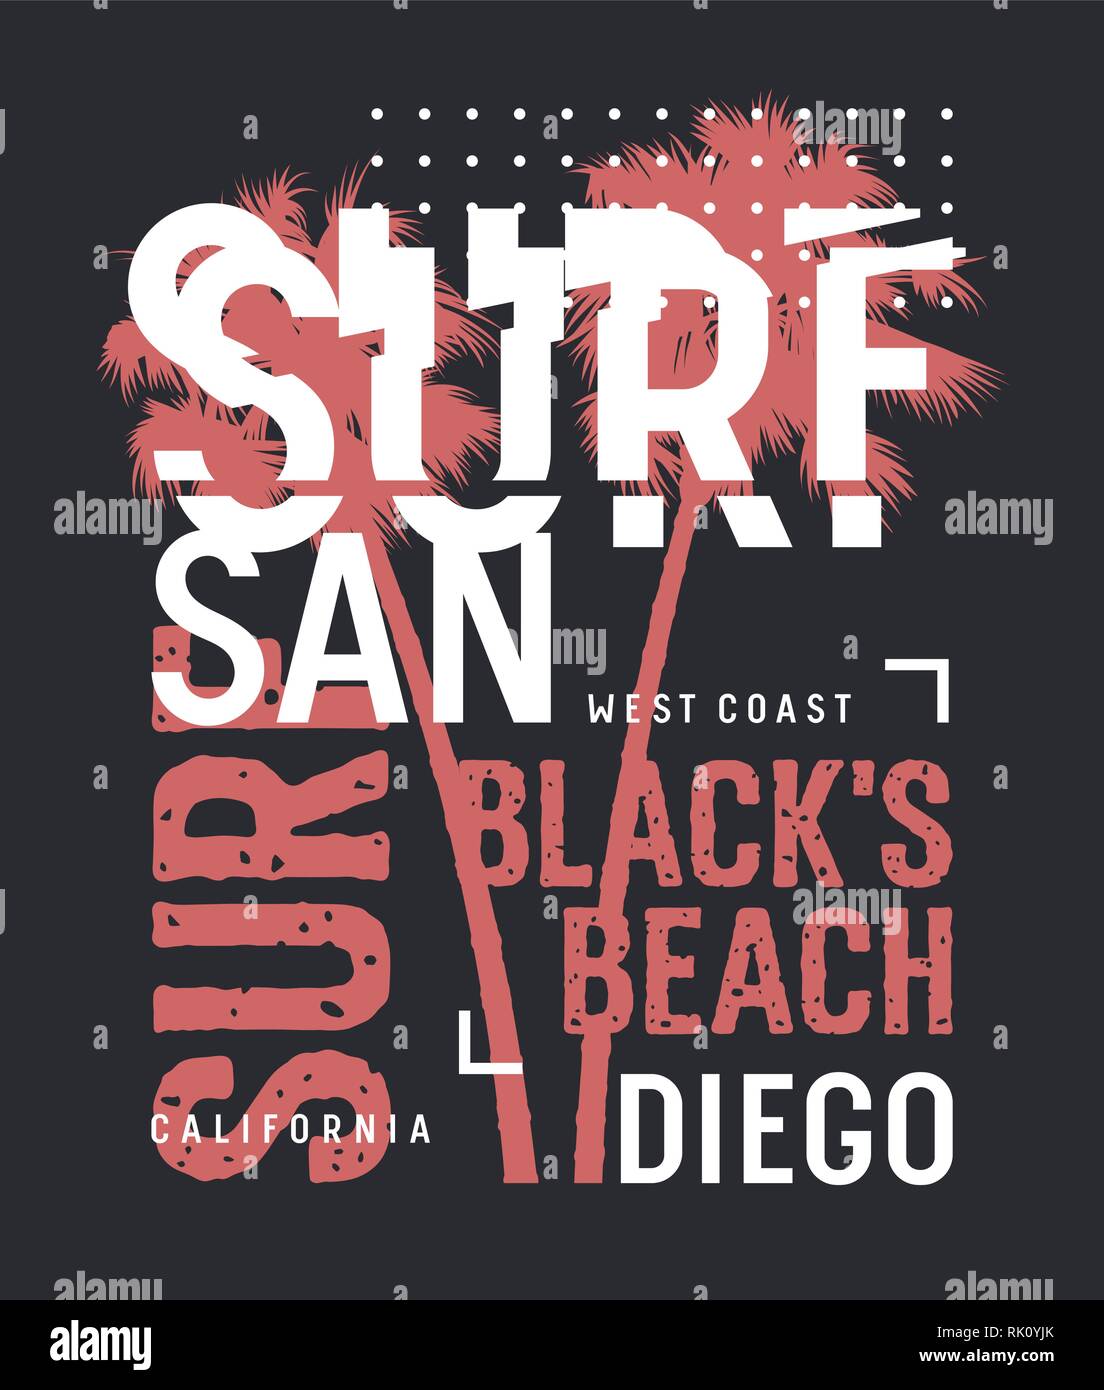 L'oeuvre de surf. Californie Surf t-shirt design. Vintage Graphic Tee. Vecteurs Illustration de Vecteur